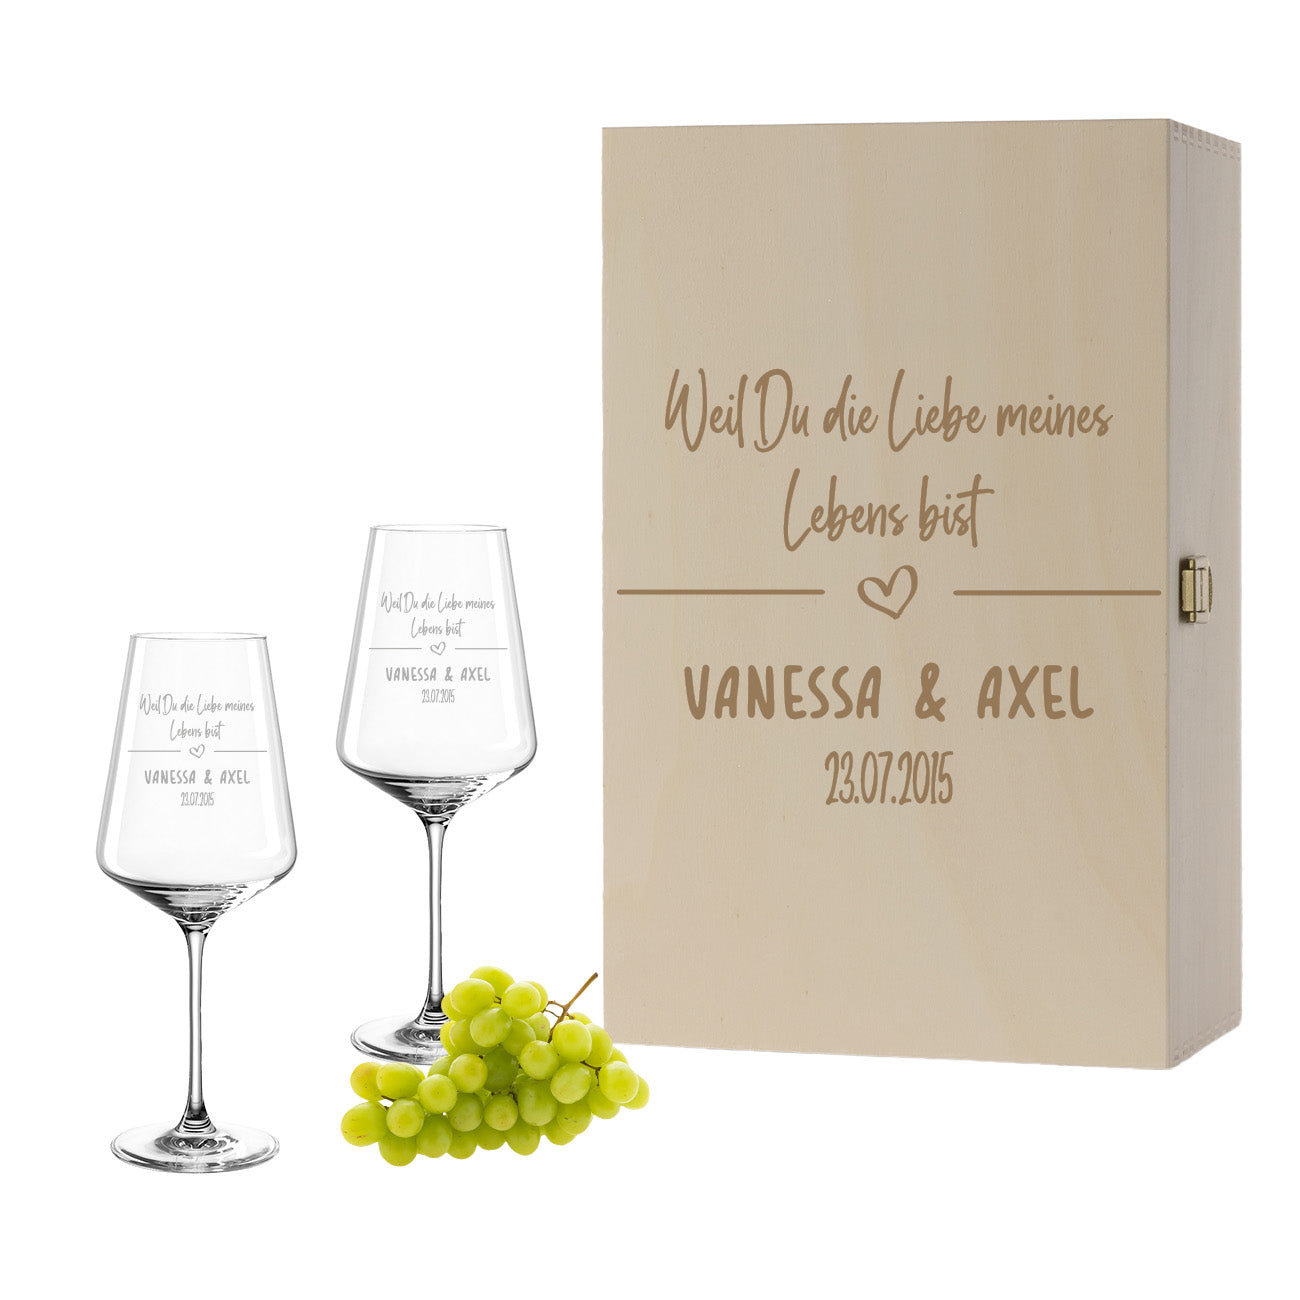 Weinglas mit Gravur Leonardo Puccini "WEIL DU DIE LIEBE MEINES LEBENS BIST" 2 Gläser und Holzbox groß mit Wunschname & Datum